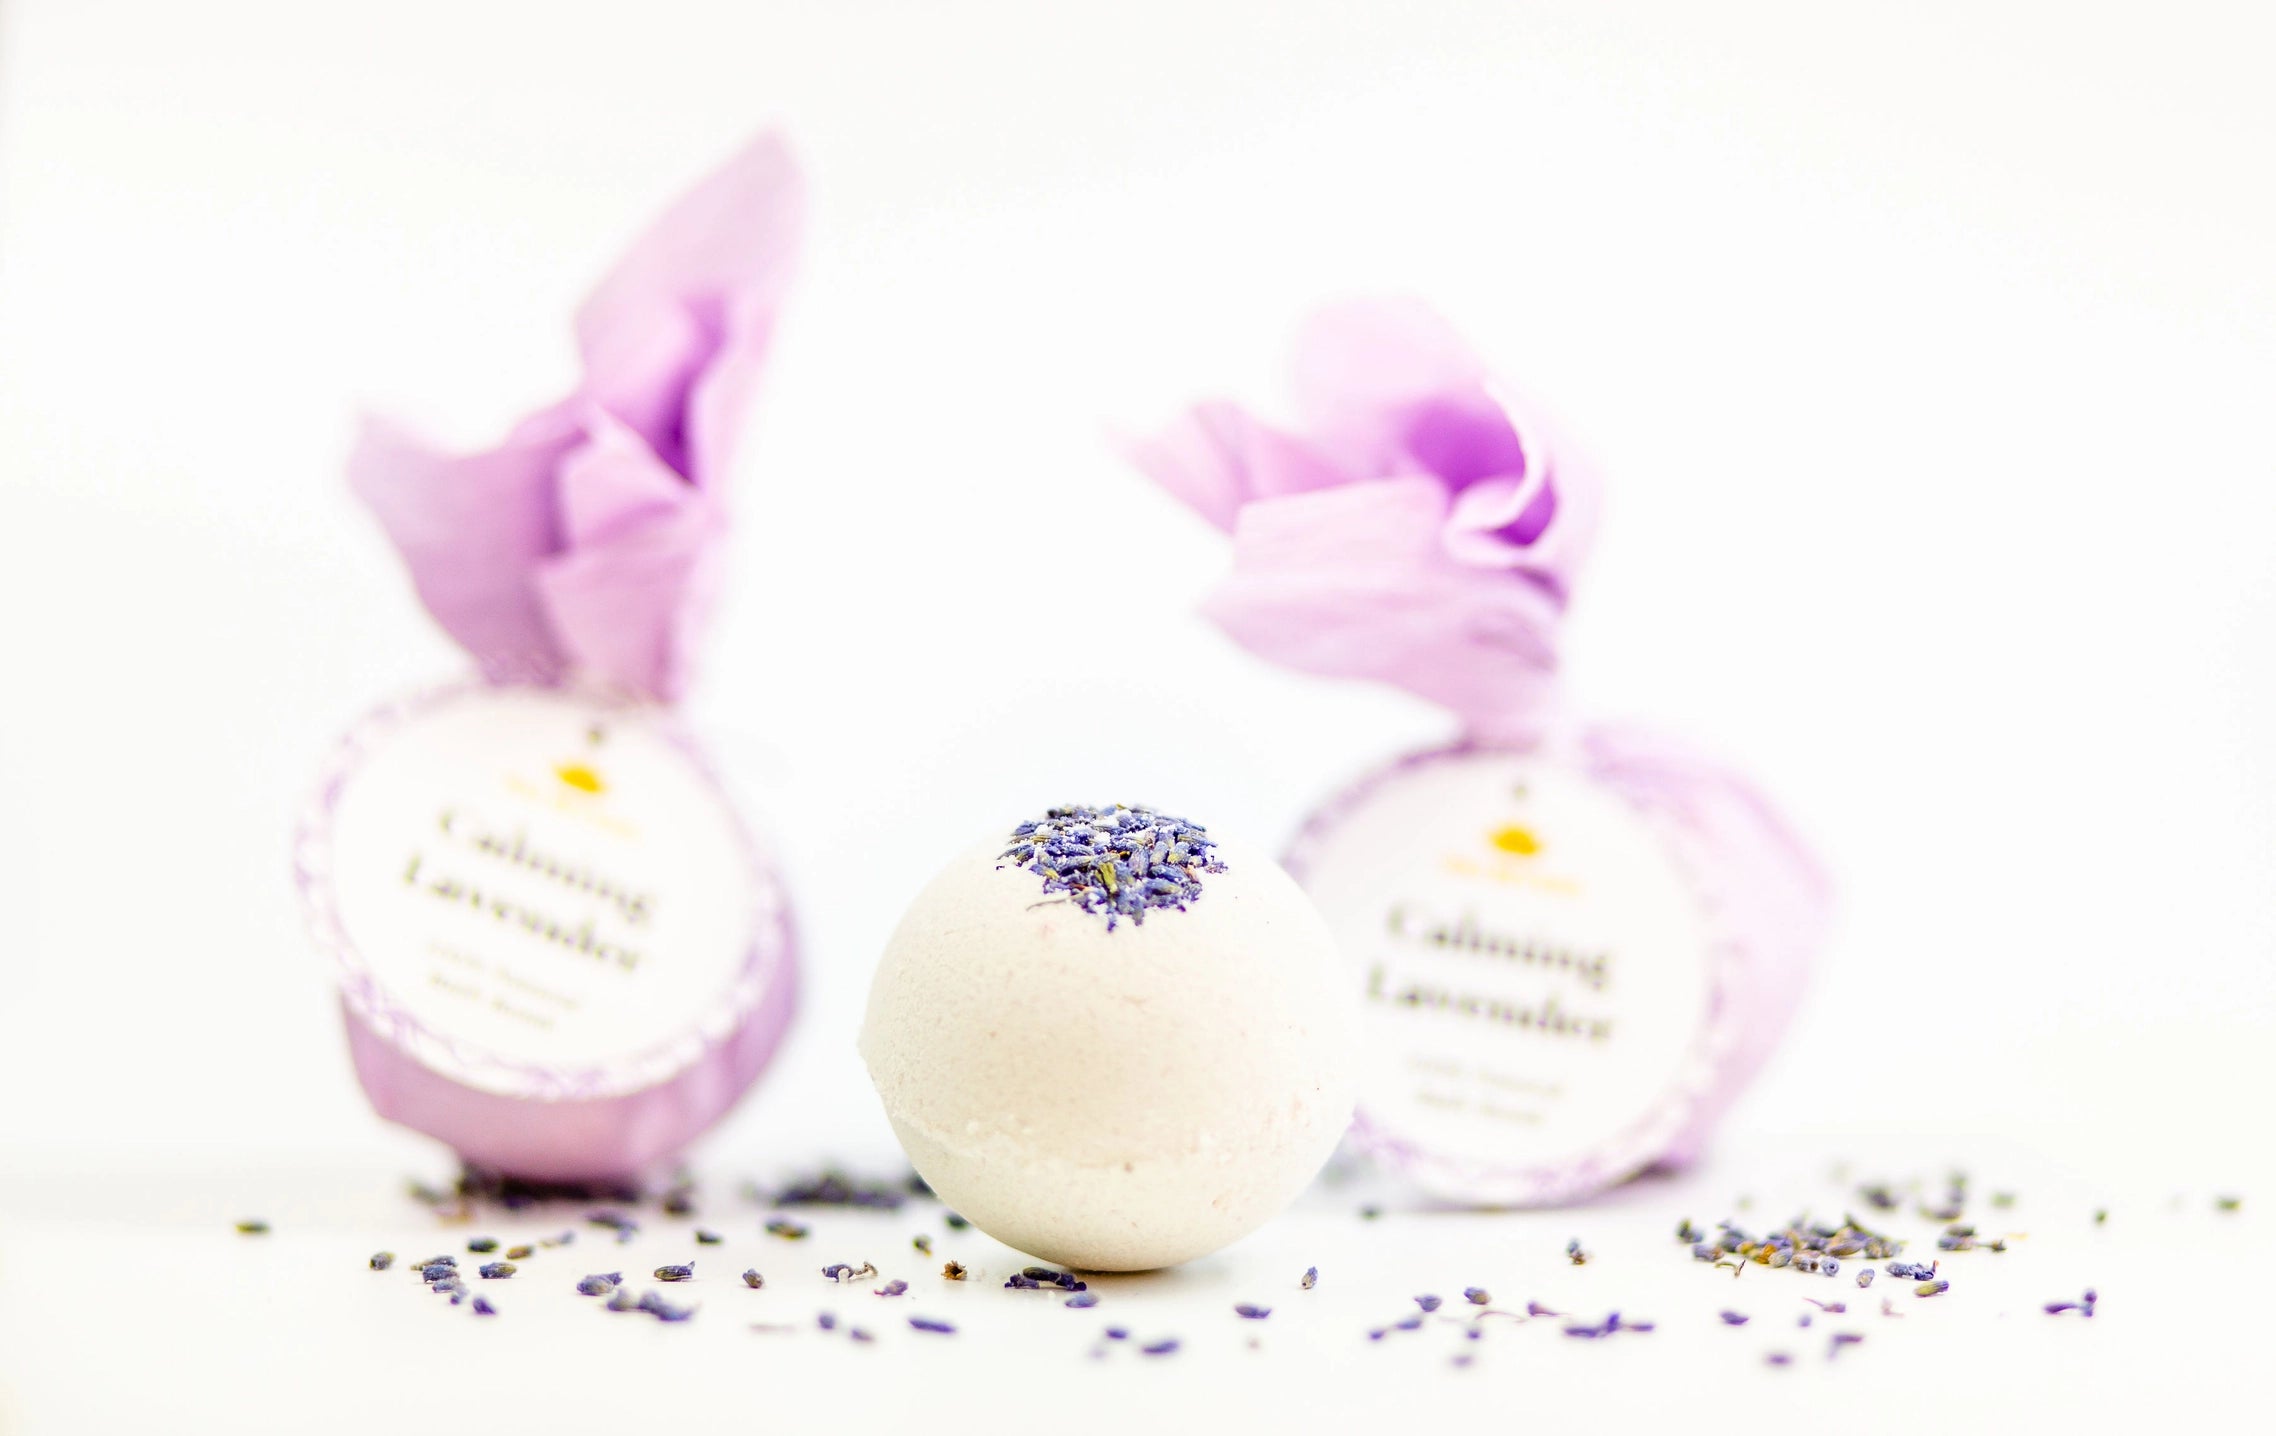 Calming Lavender Bath Bomb Apex Ethical Boutique